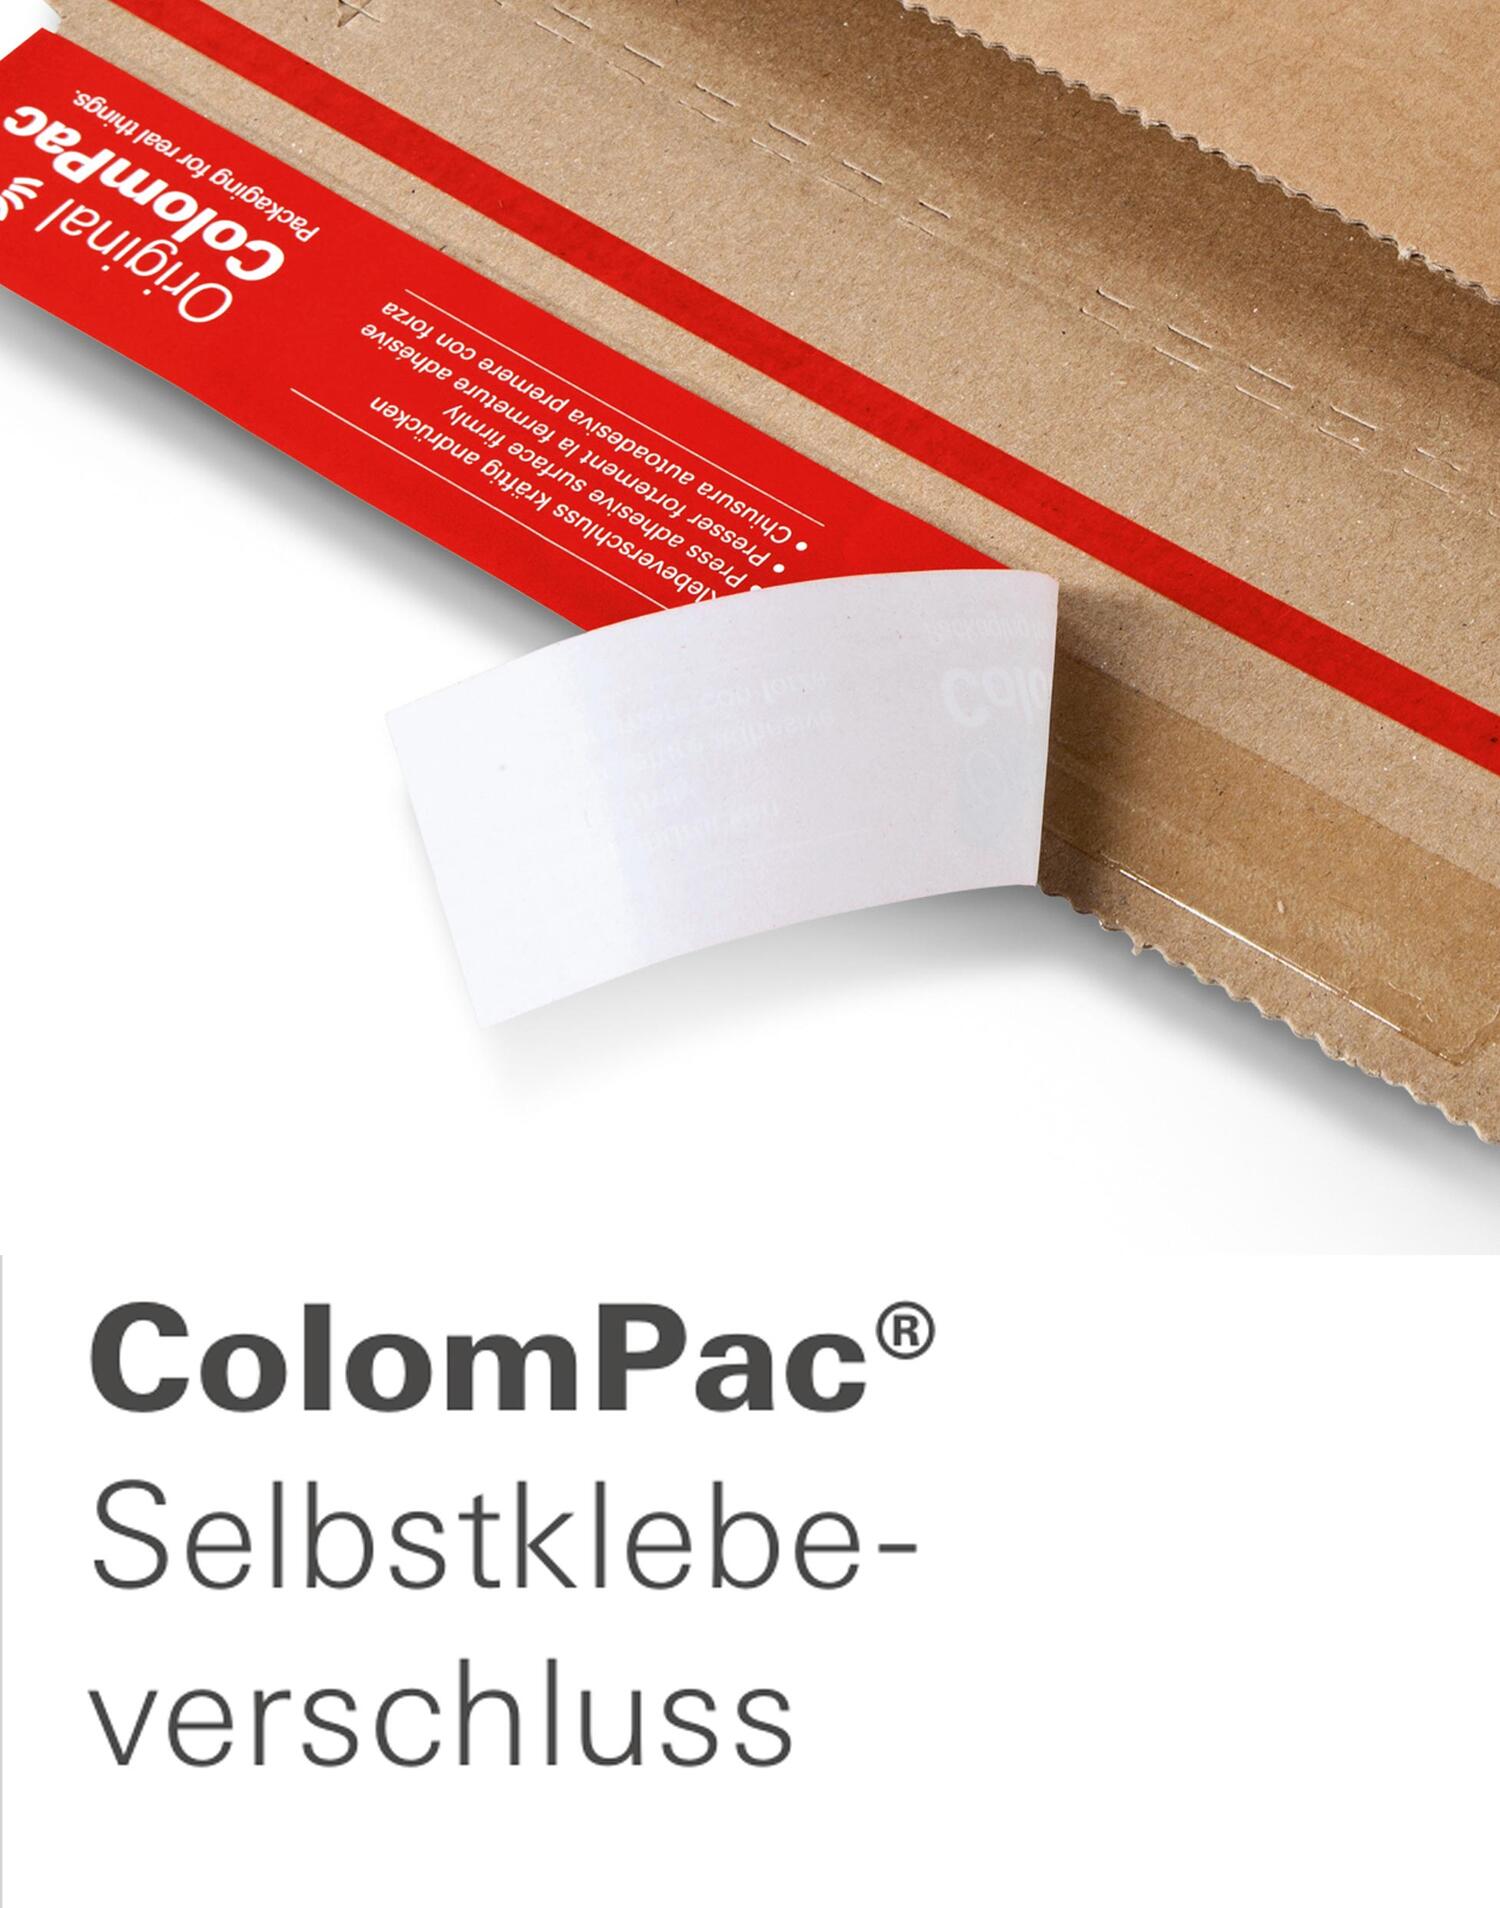 ColomPac Planversandbox 885 x 115 x 115mm mit Selbstklebeverschluss & Aufreifaden braun